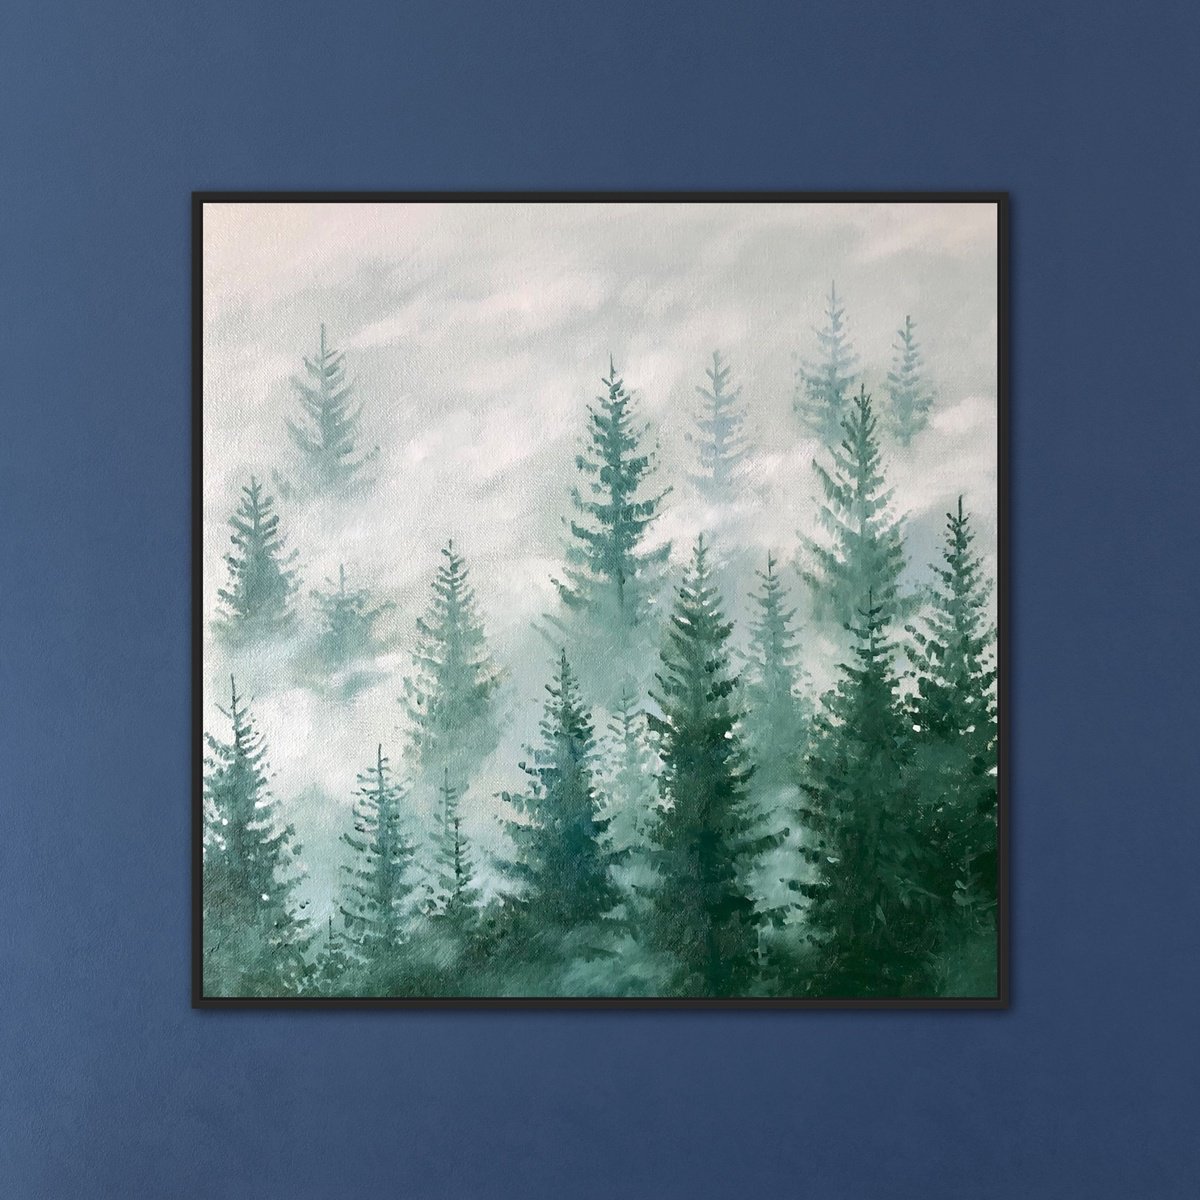 Foggy Forest #2 by Volodymyr Smoliak